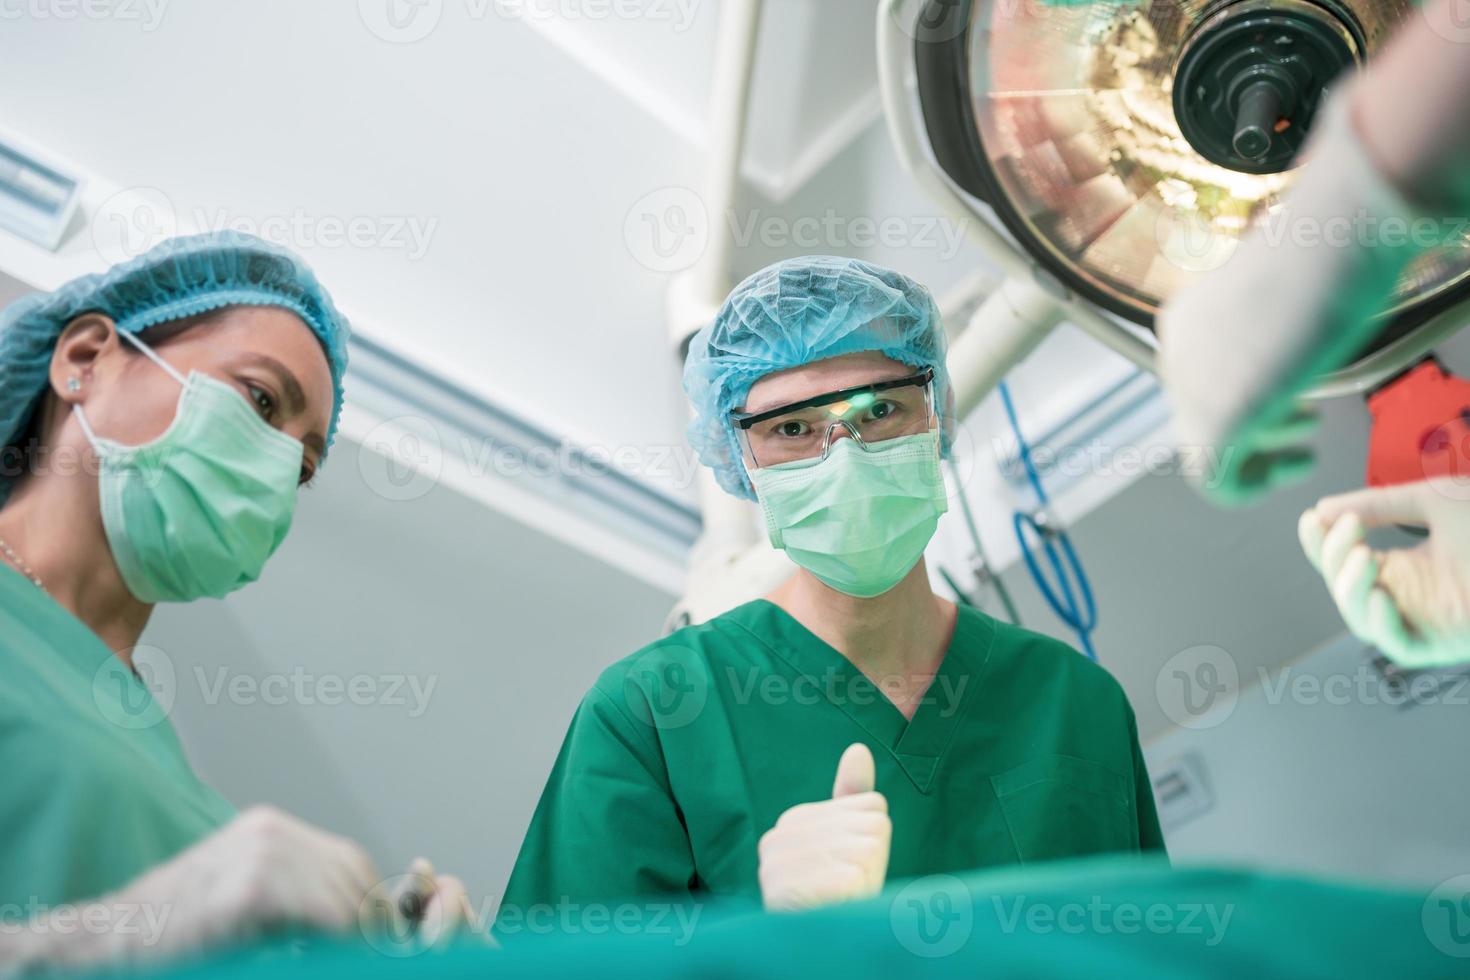 bild i låg vinkel av professionellt kirurgteam som utför operation i operationssalen, kirurg, assistenter och sjuksköterskor som utför operation på en patient, vårdkoncept för cancer och sjukdomsbehandling foto